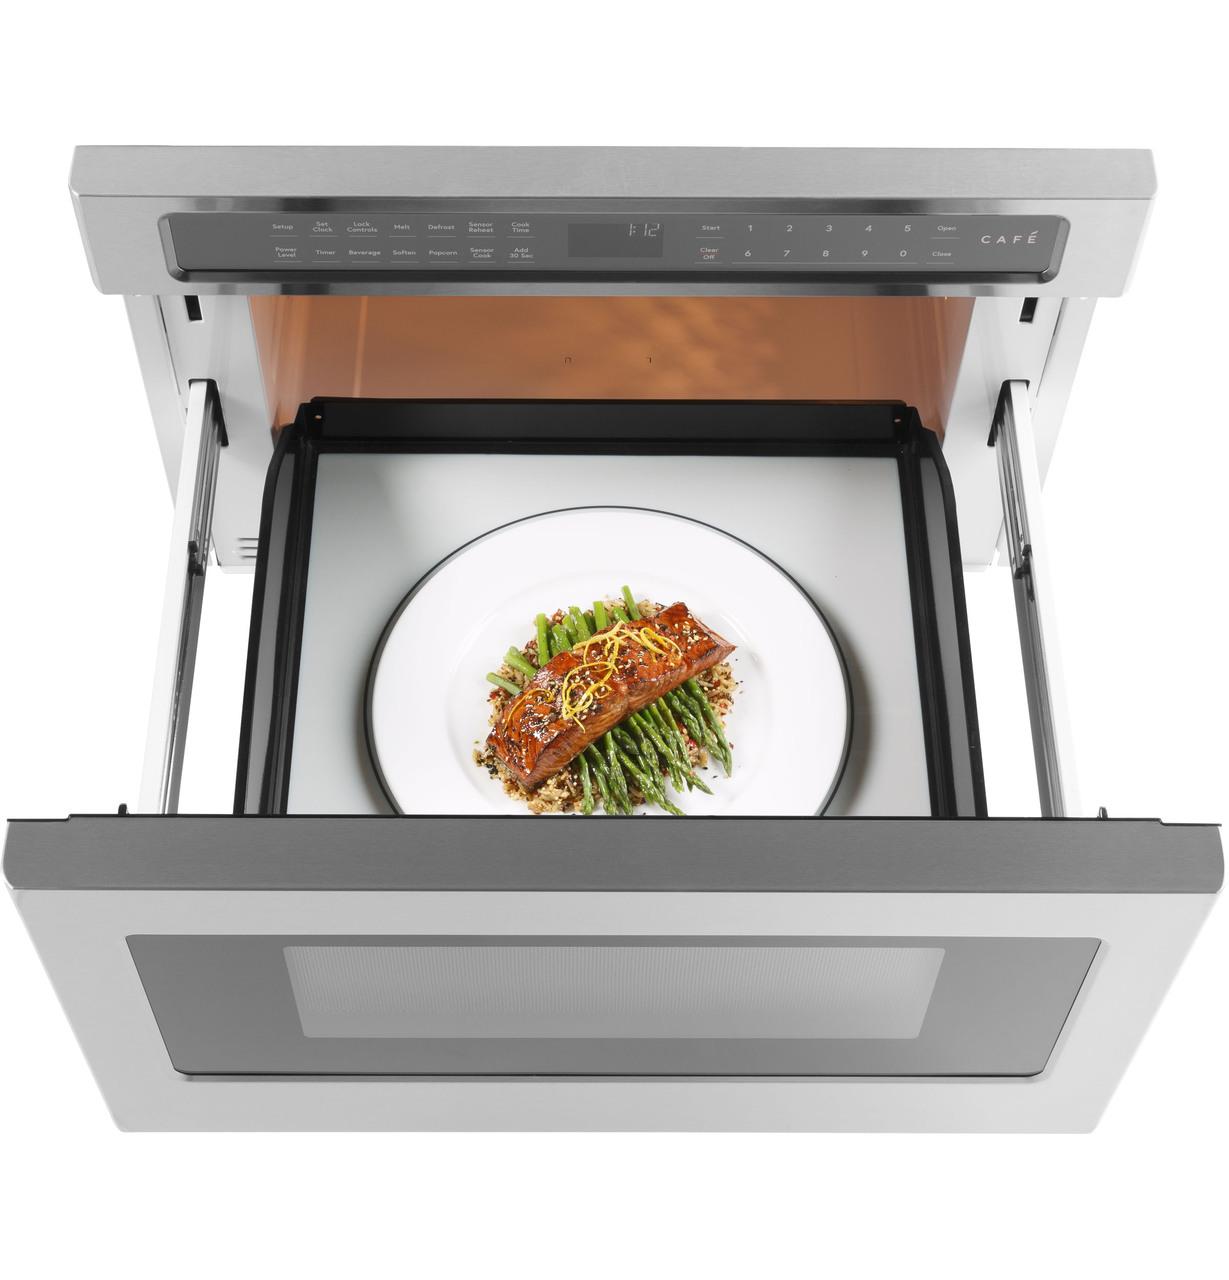 Cafe Caf(eback)™ Built-In Microwave Drawer Oven